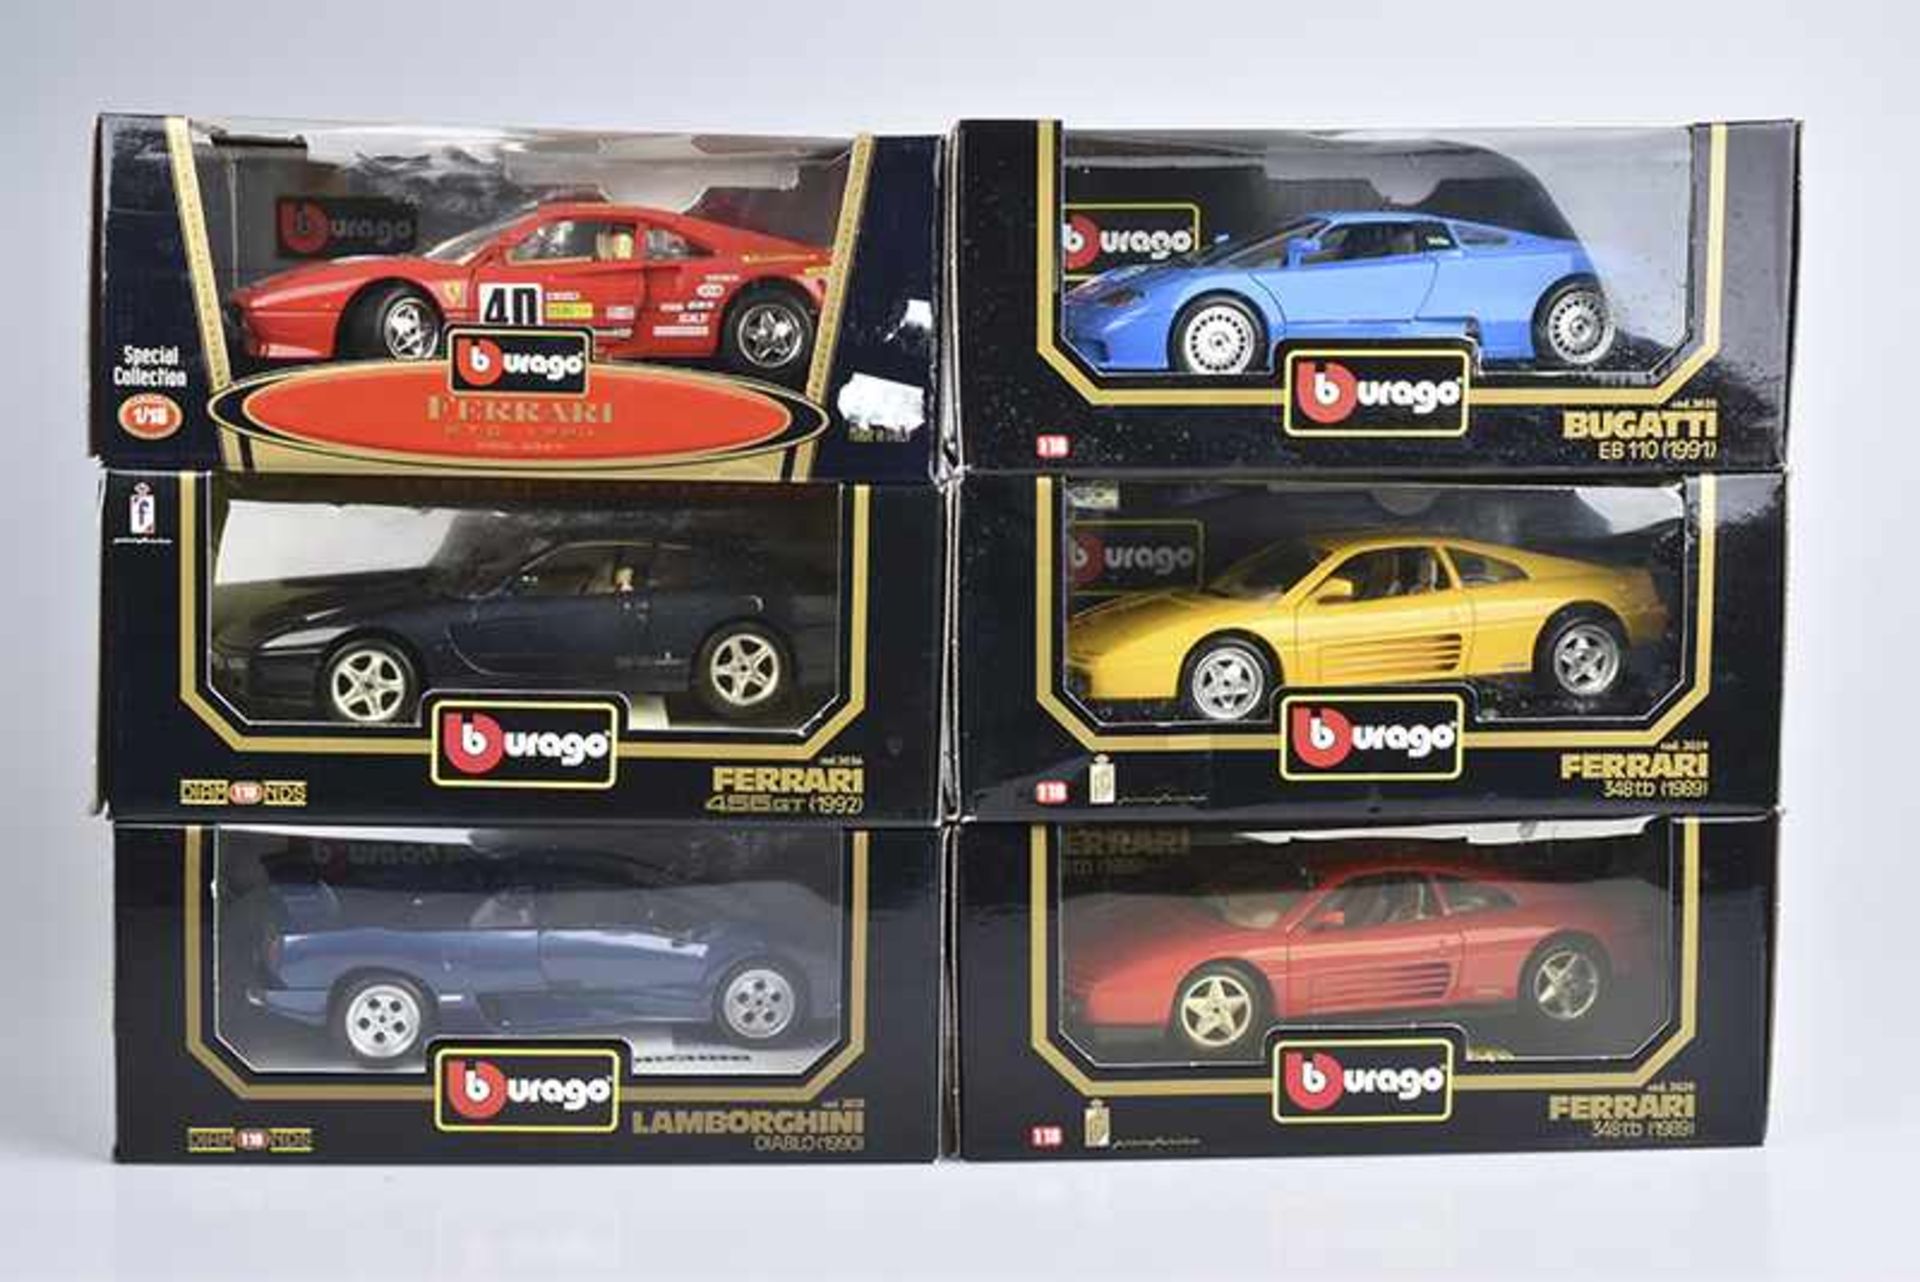 BURAGO 6 Modellautos, Metall, Kunststoffteile, M 1:18, Ferrari 456 GT (1992), Lamborghini Diablo (